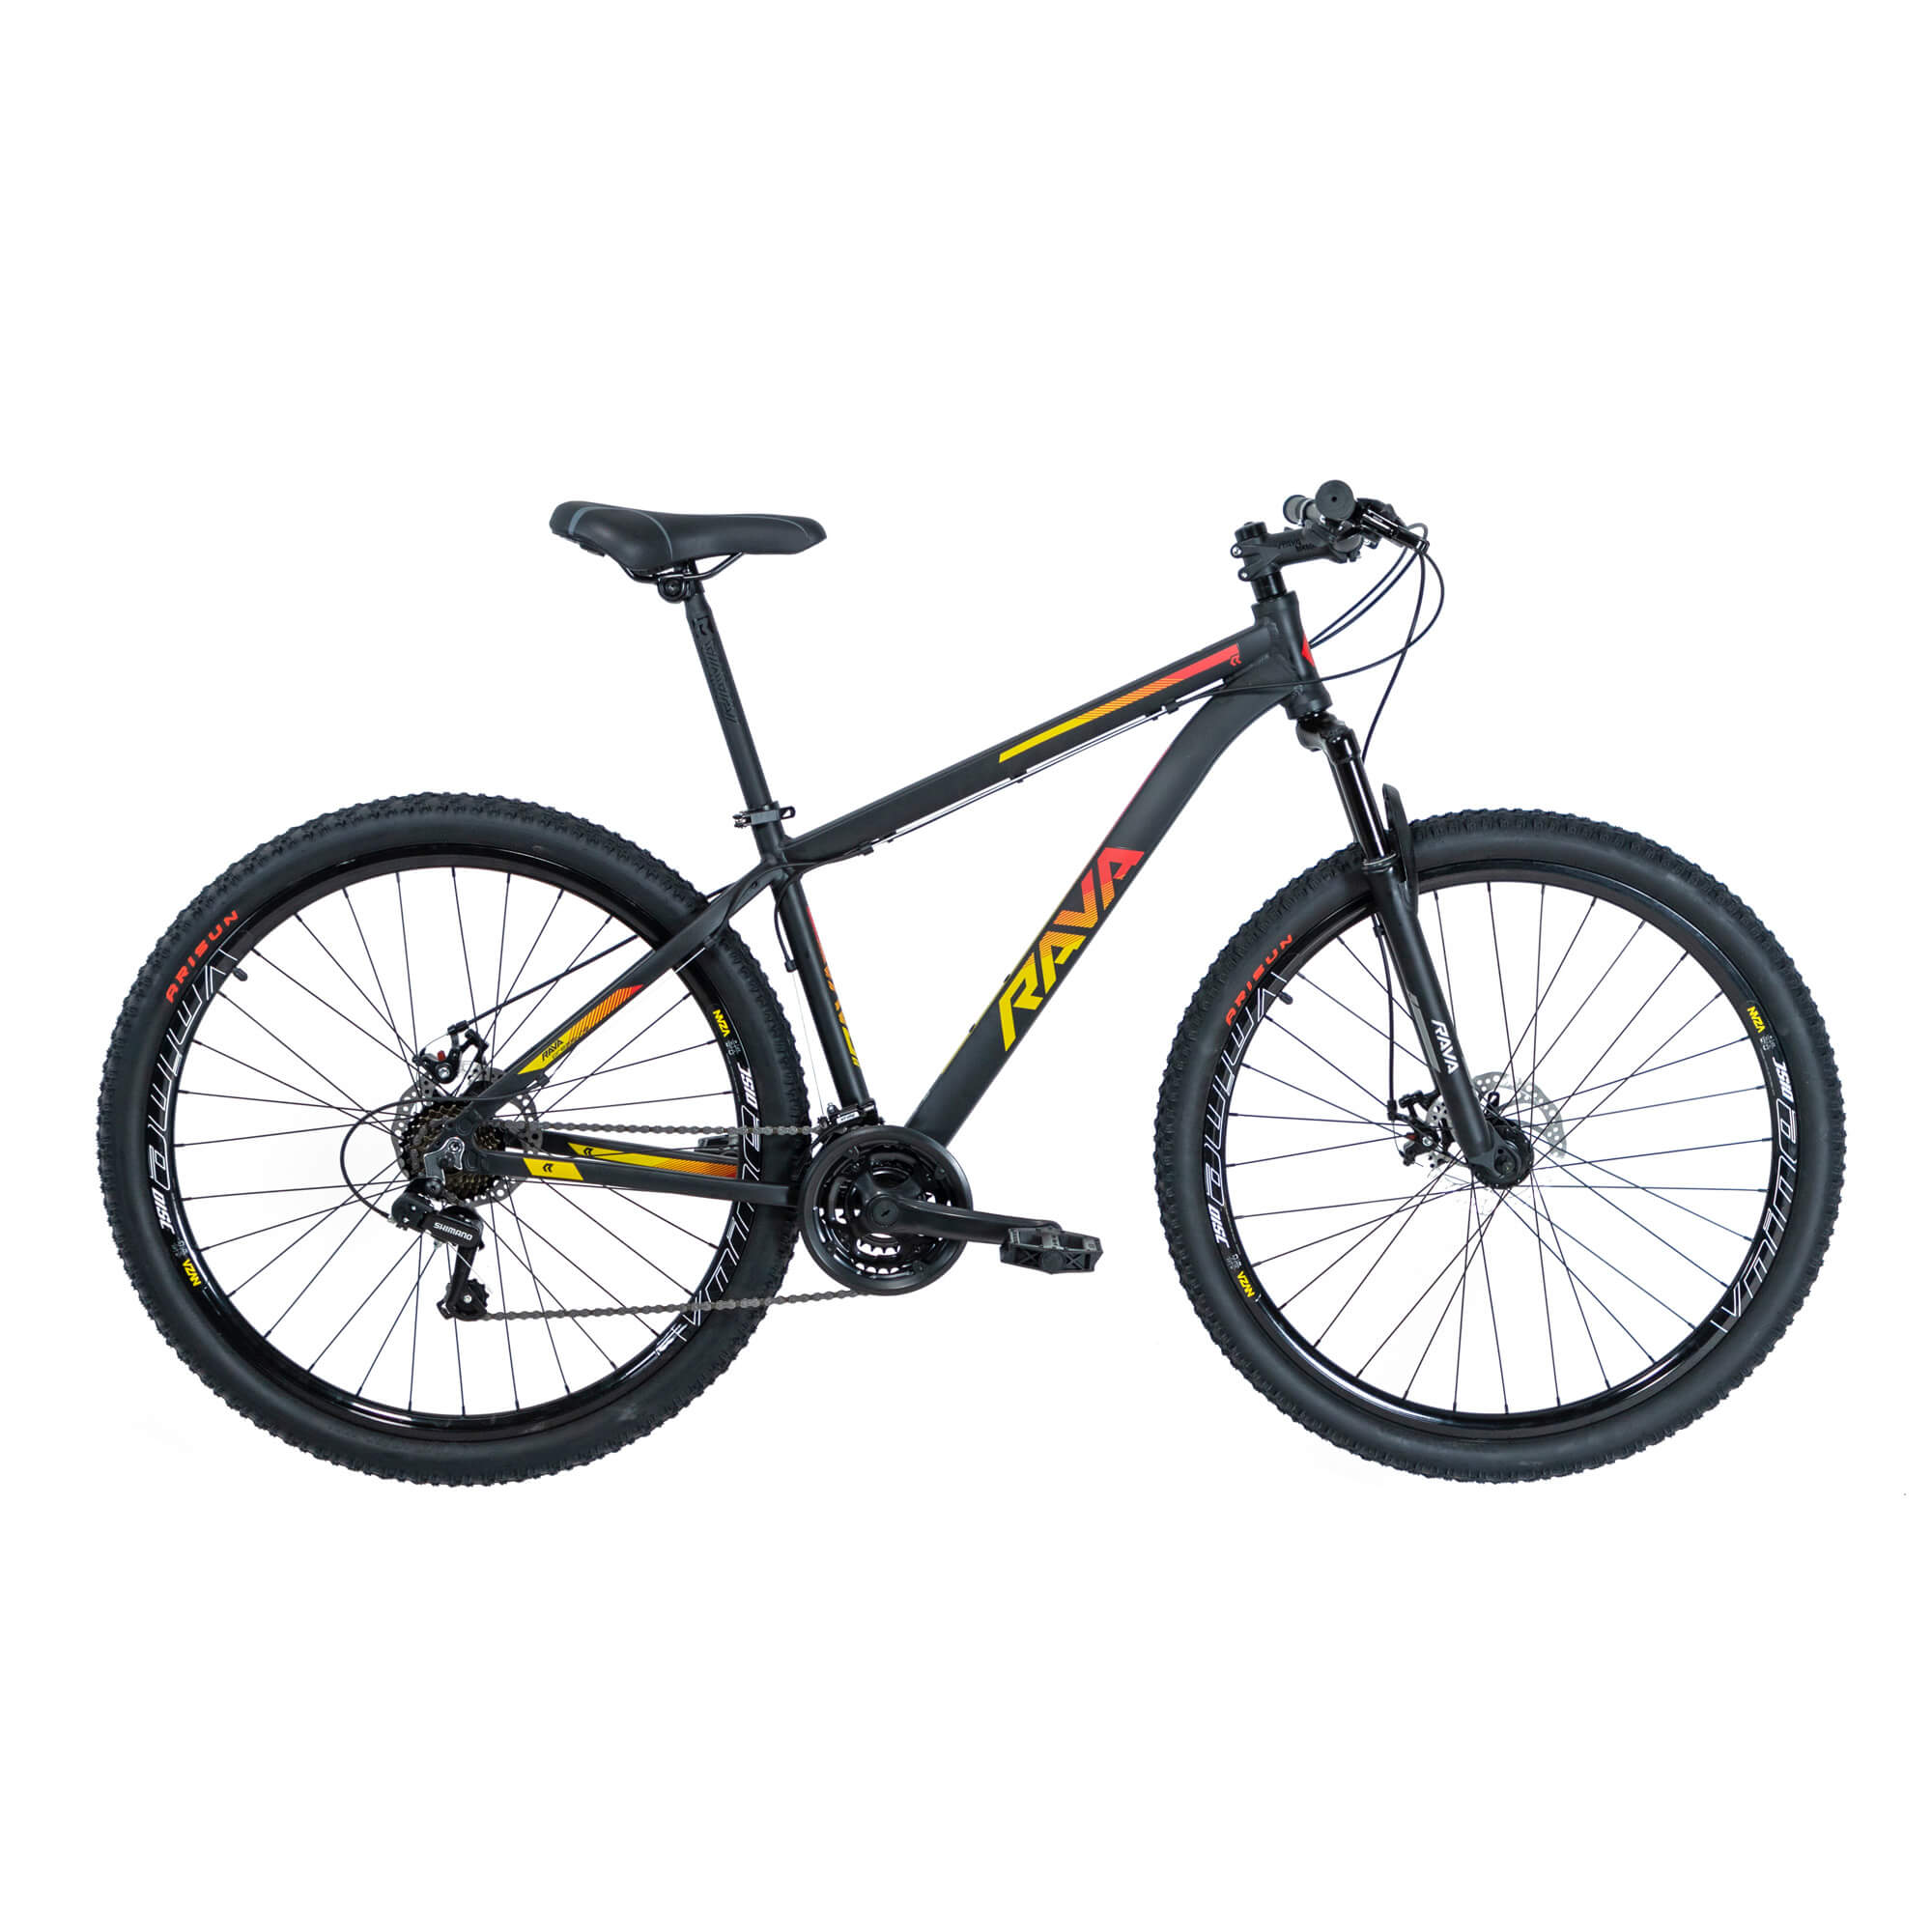 Bicicleta Rava Pressure 2019/2020 | 21 v. - Preto/Vermelho/Amarelo, 19"